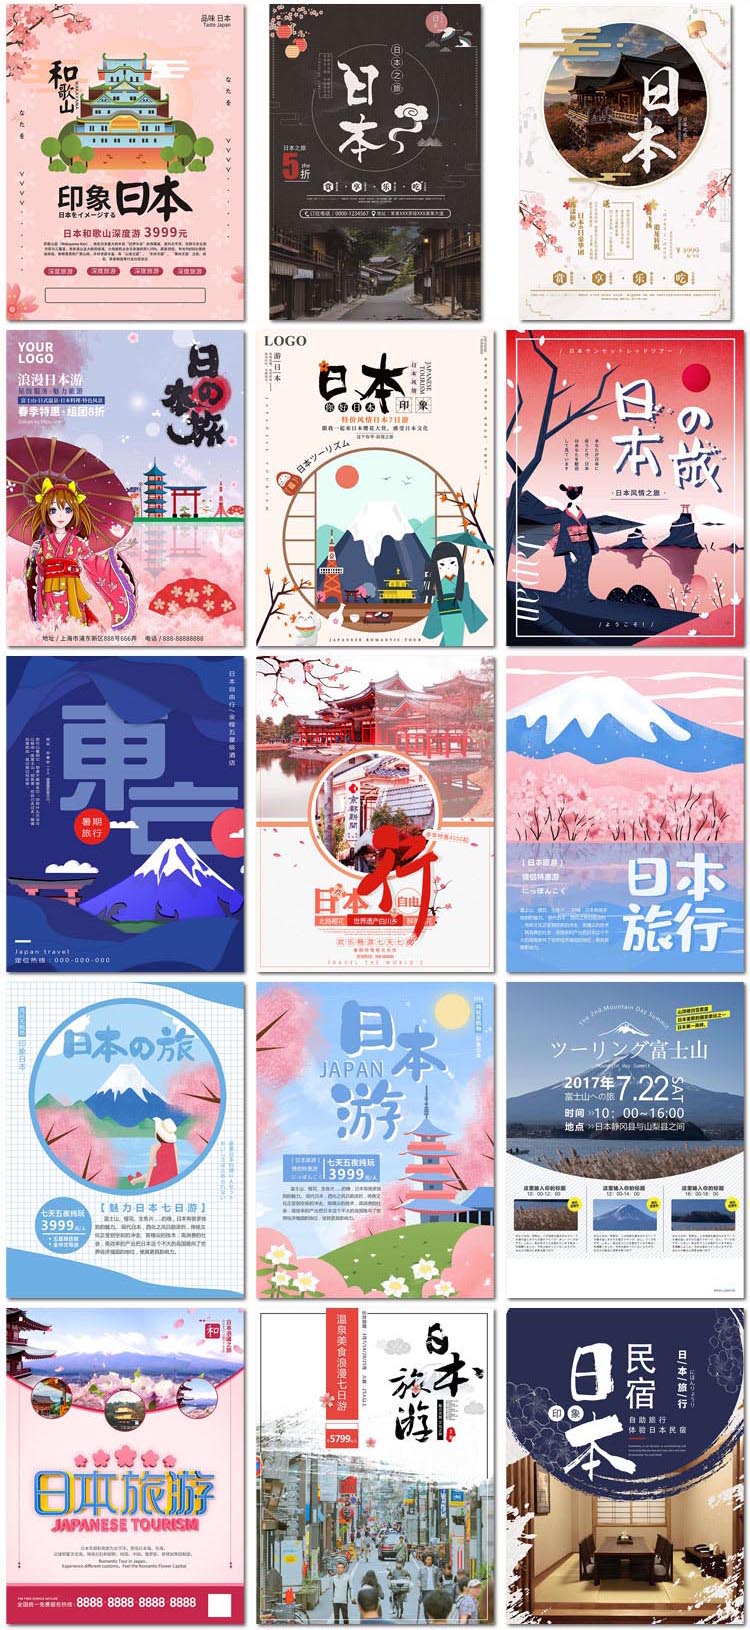 创意日本日式和风料理美食景点风景旅行社旅行海报模板素材设计